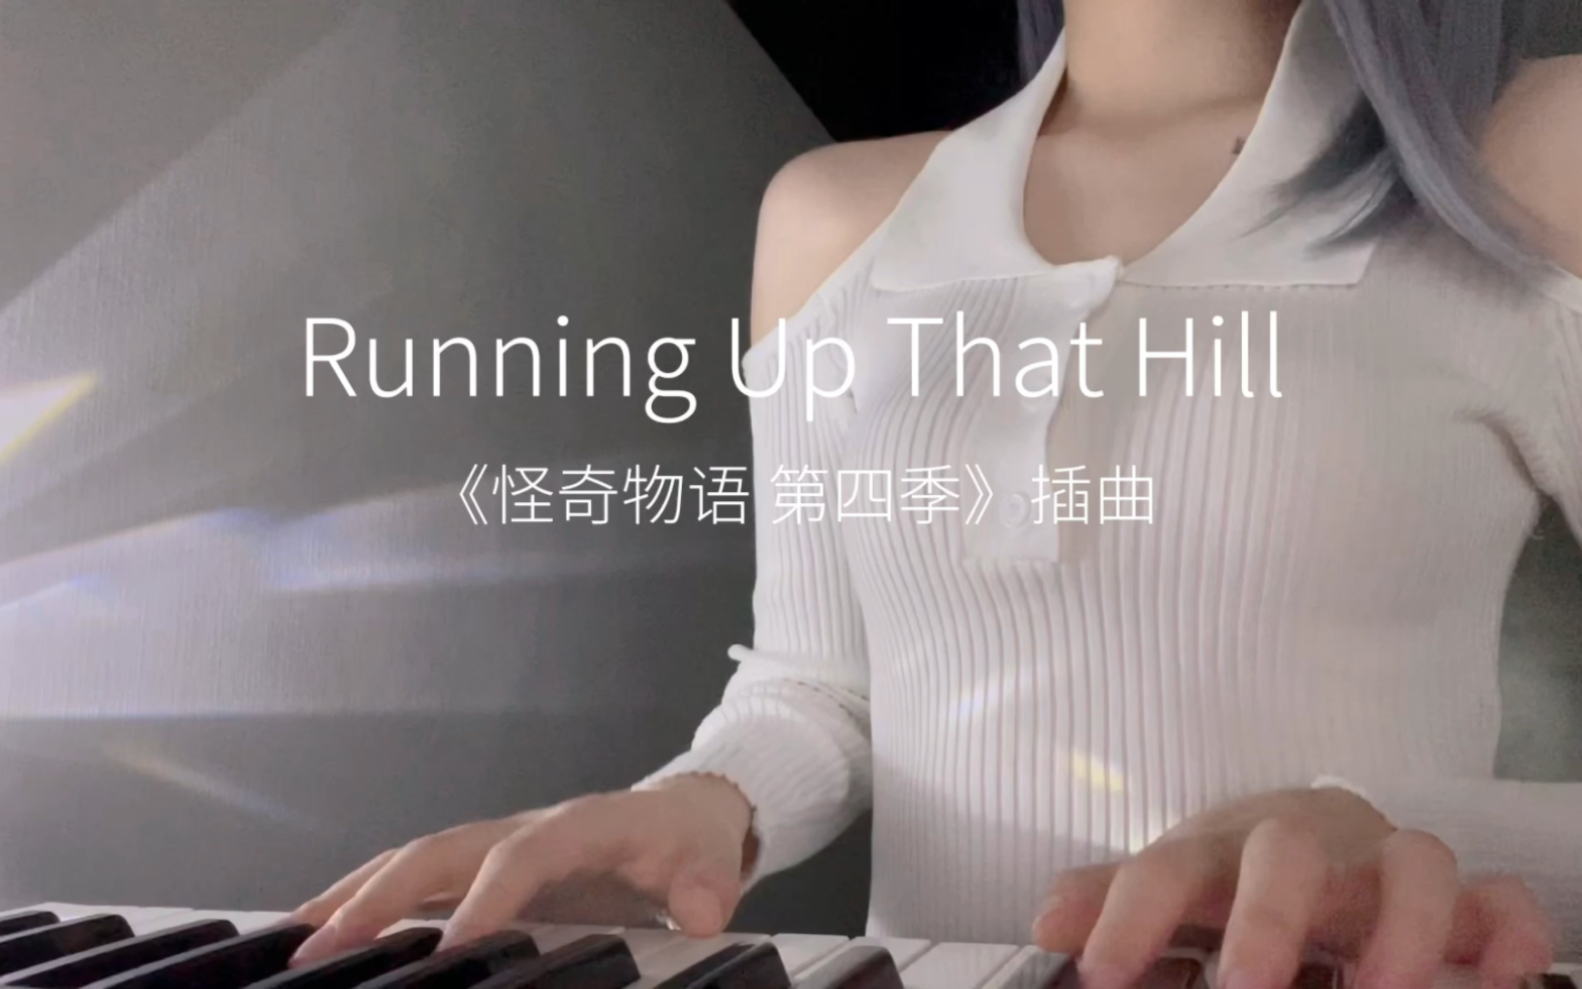 17秒短视频 - 怪奇物语《Running up that hill》翻唱